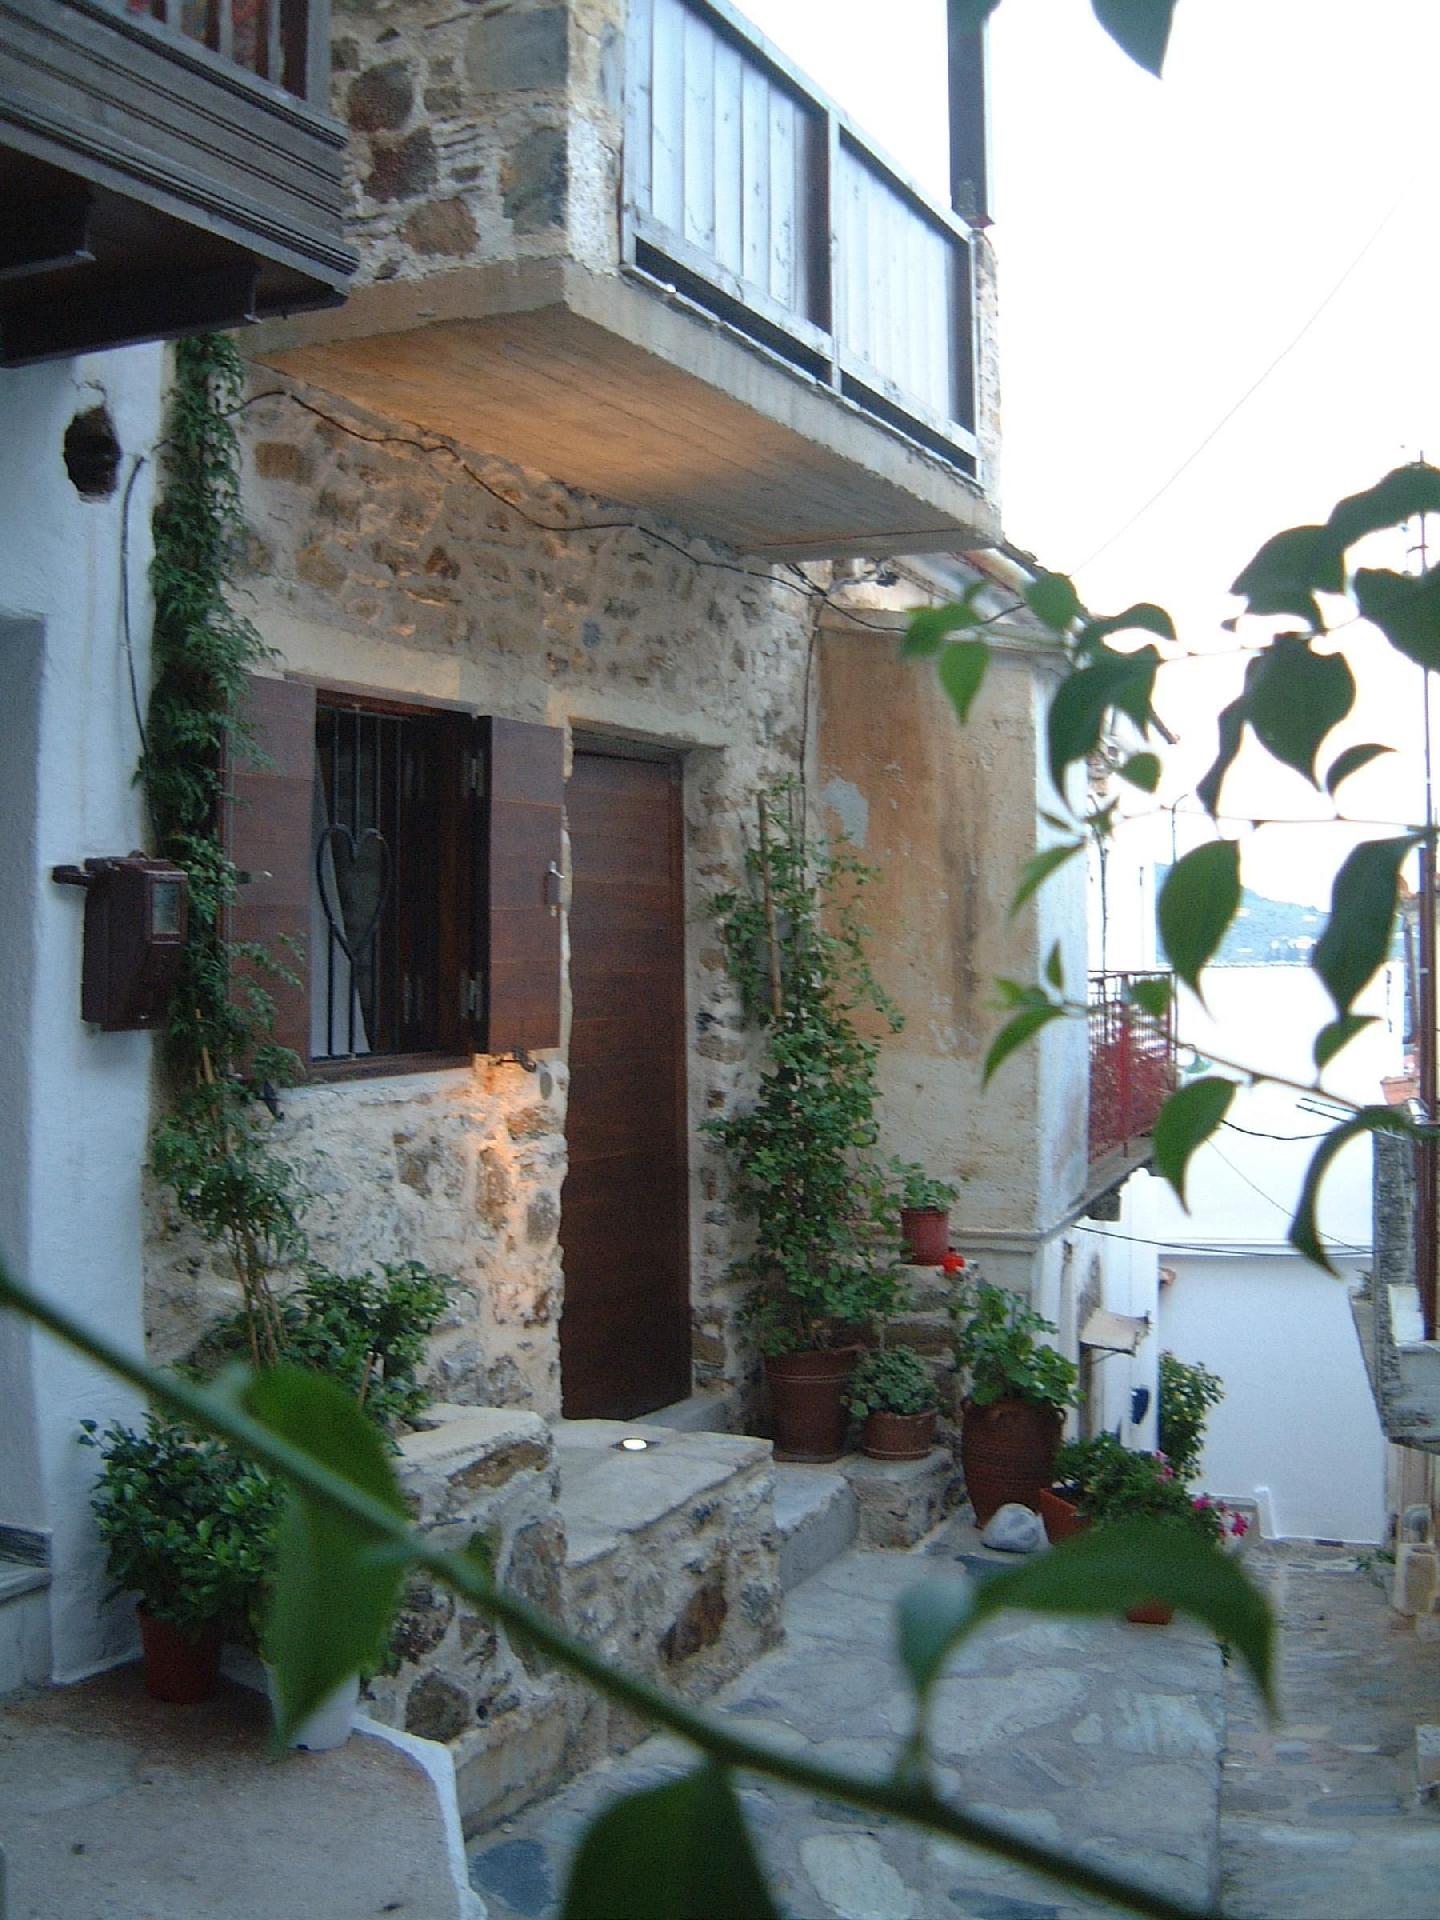 Ferienhaus für 2 Personen ca. 80 m² in S Ferienhaus in Griechenland